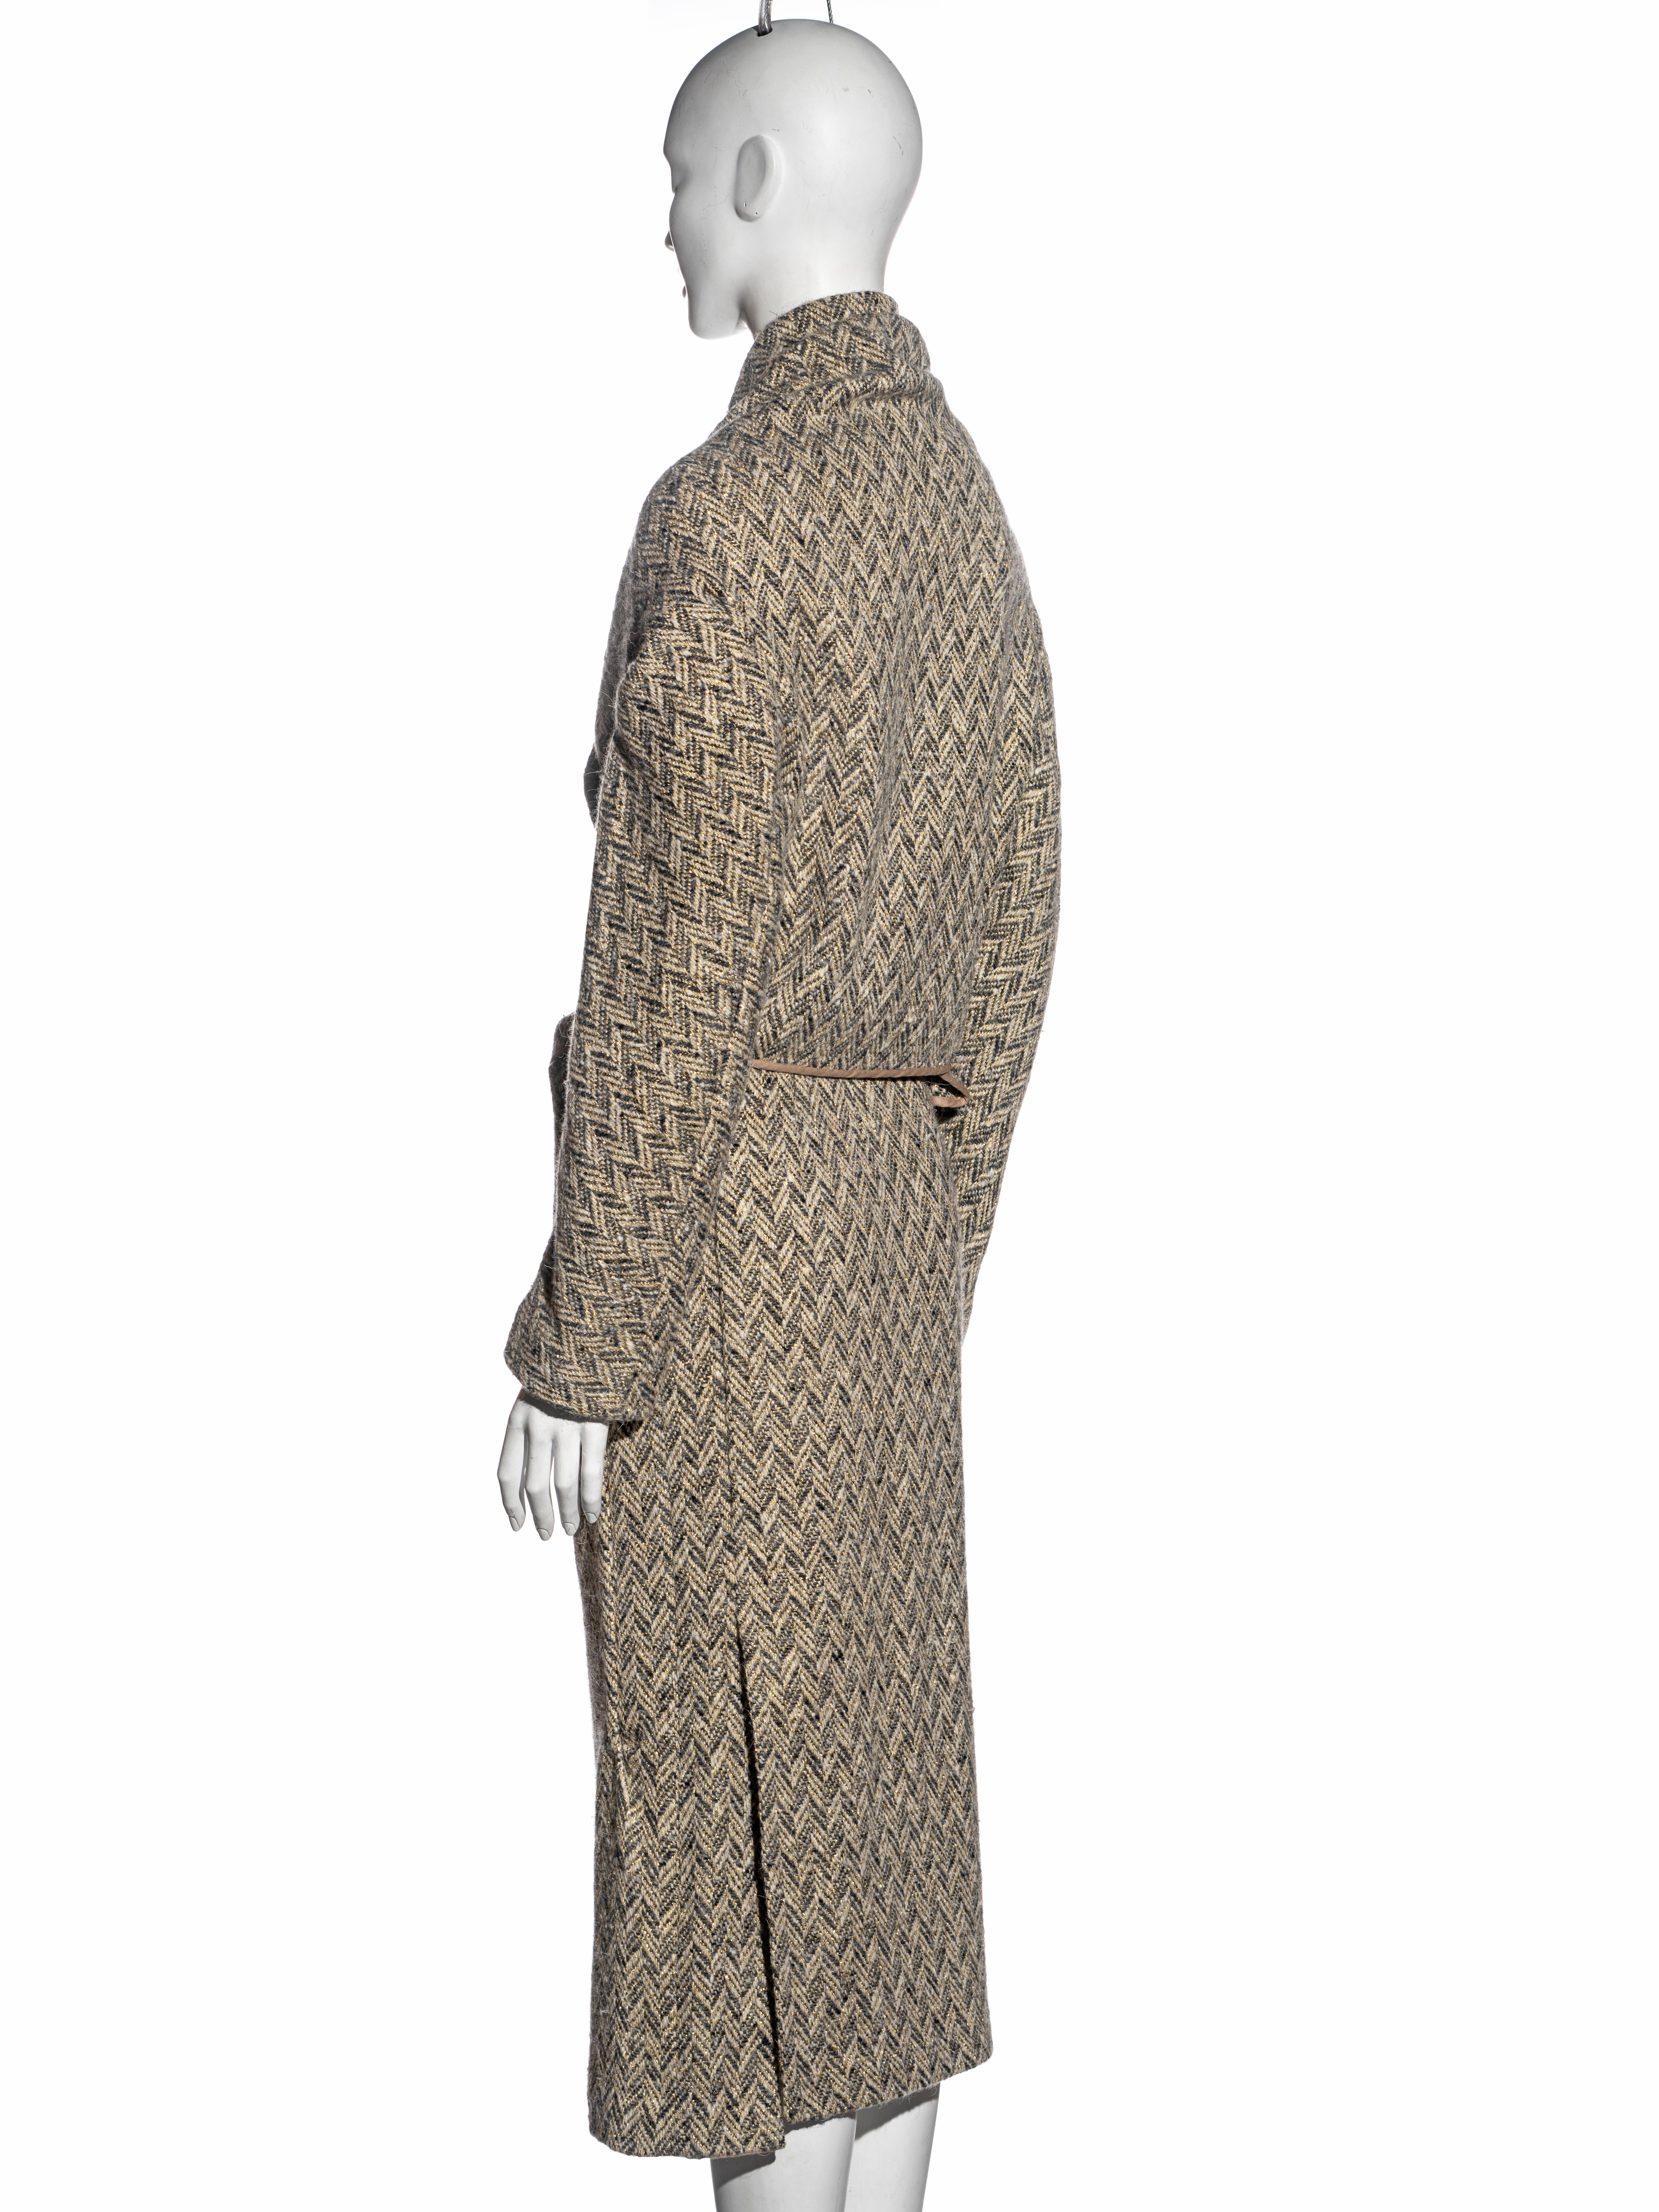 Comme des Garçons bias-cut herringbone tweed skirt suit, fw 1999 For Sale 6